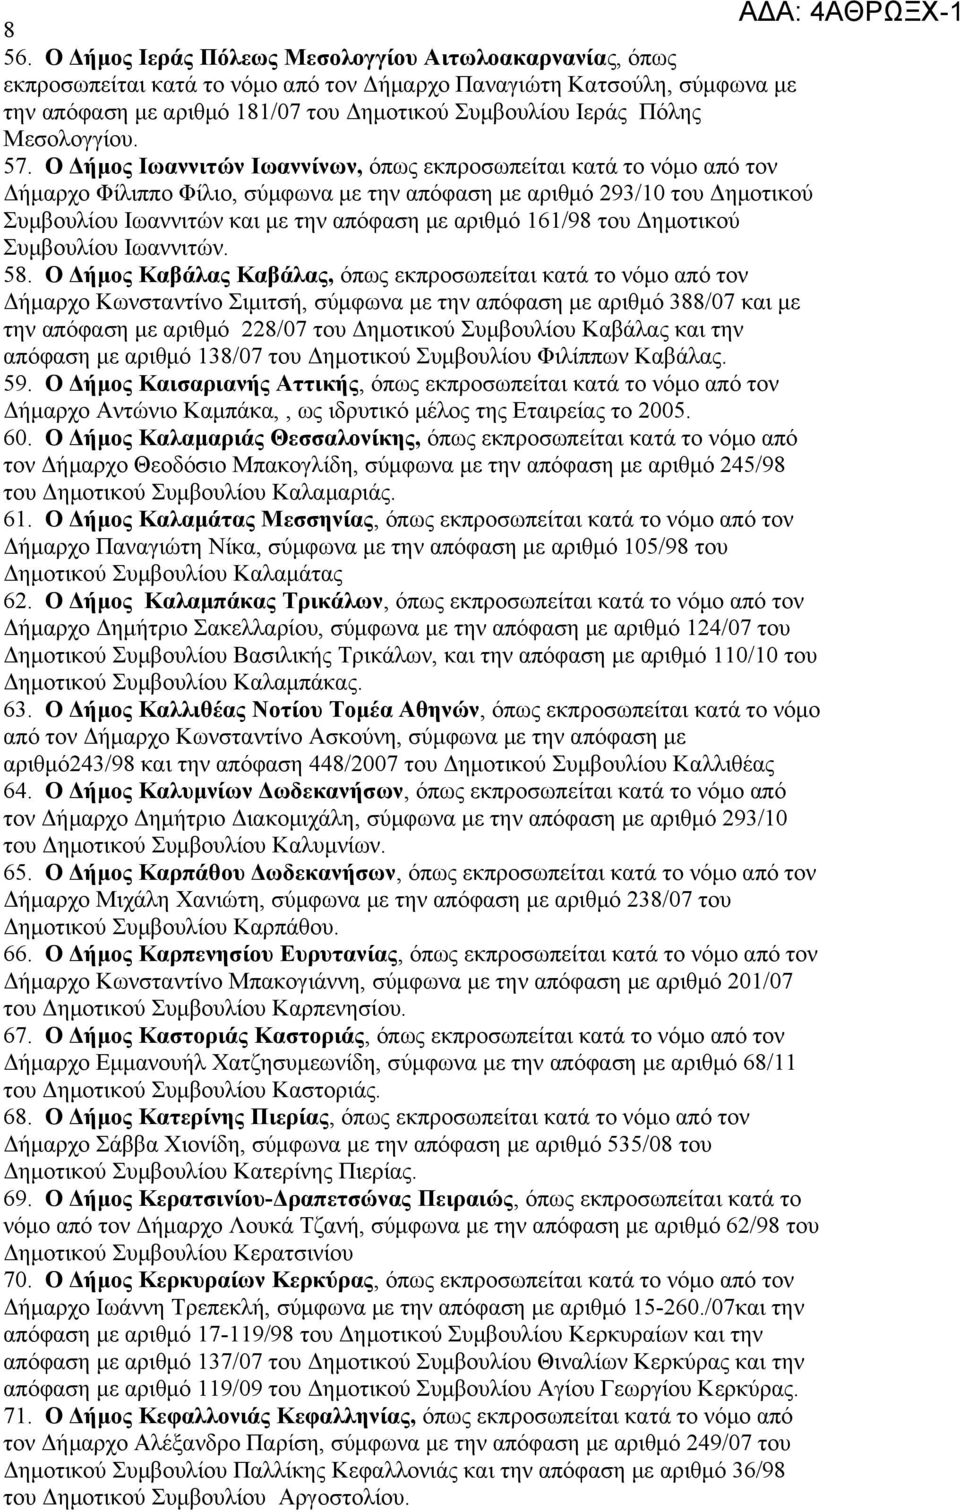 Ο Δήμος Ιωαννιτών Ιωαννίνων, όπως εκπροσωπείται κατά το νόμο από τον Δήμαρχο Φίλιππο Φίλιο, σύμφωνα με την απόφαση με αριθμό 293/10 του Δημοτικού Συμβουλίου Ιωαννιτών και με την απόφαση με αριθμό